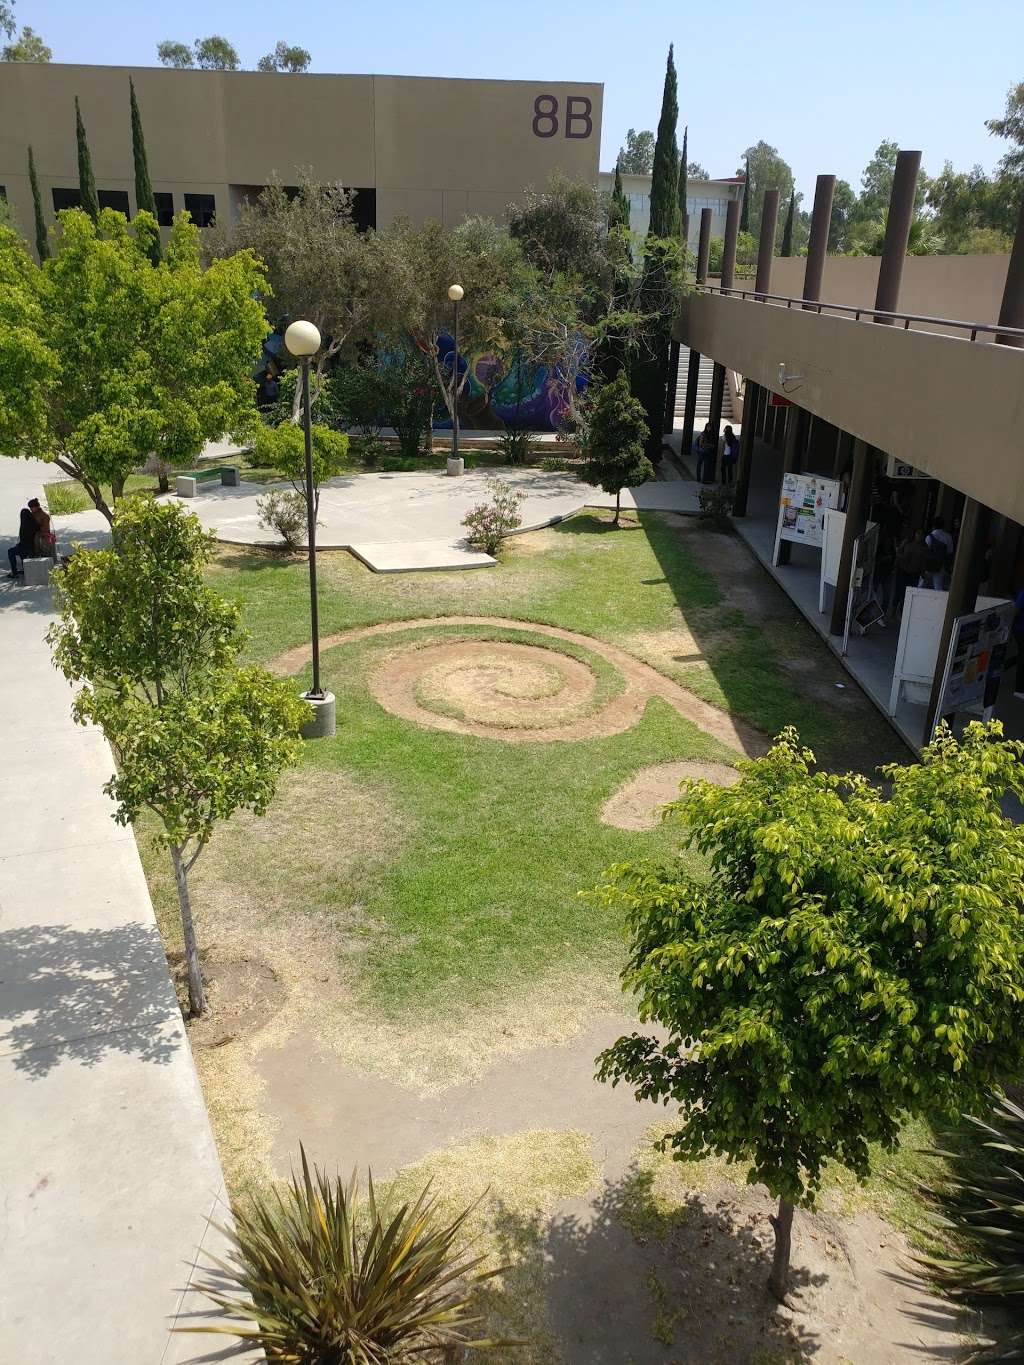 Uabc - Universidad Centro de Investigación | Universidad 14418, UABC, Meza de Othay, 22390 Tijuana, B.C., Mexico | Phone: 664 682 1099